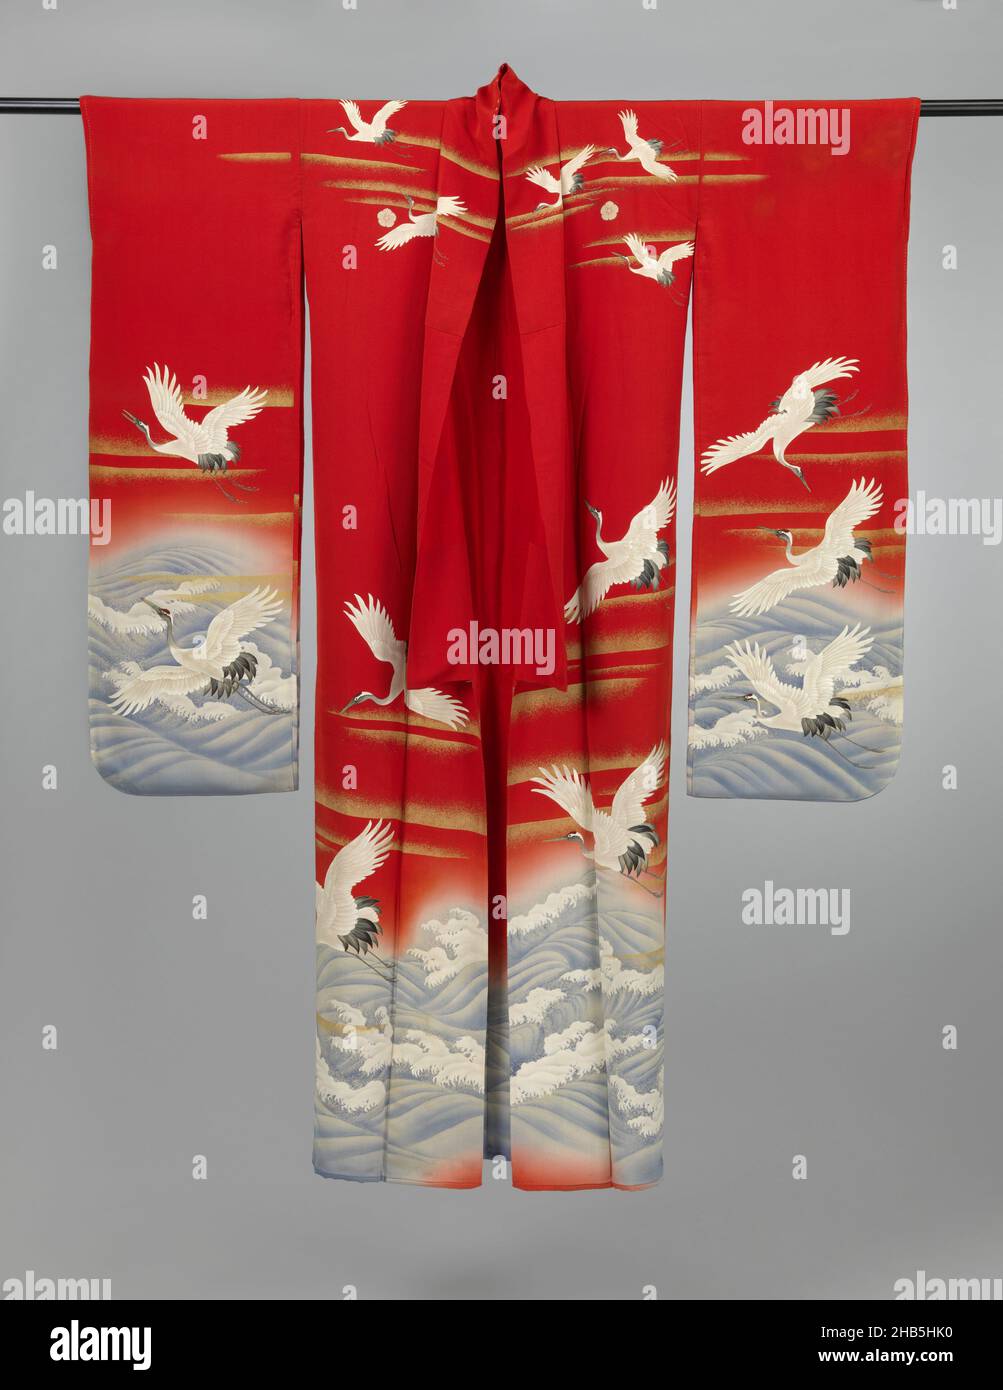 Kimono pour une femme non mariée, Furisode à Cranes au-dessus de la mer, le milieu (shitagi) d'un ensemble de trois kimono formel à manches longues pour une jeune femme non mariée (furisode), avec sur les manches, les panneaux avant et arrière une ornementation de grues au-dessus d'une mer agitée.Soie rouge crêpe (chirimen) avec décoration yuzen en blanc, noir et bleu, grues avec détails brodés, bandes nuageuses en feuille d'or et les vagues avec détails en fil d'argent et peinture blanche.Doublure en soie rouge.Cinq armes familiales (mon) d'œillets (nadeshiko)., fabricant: Anonyme, Japon, 1920 - 1940, soie,peinture, broderie Banque D'Images